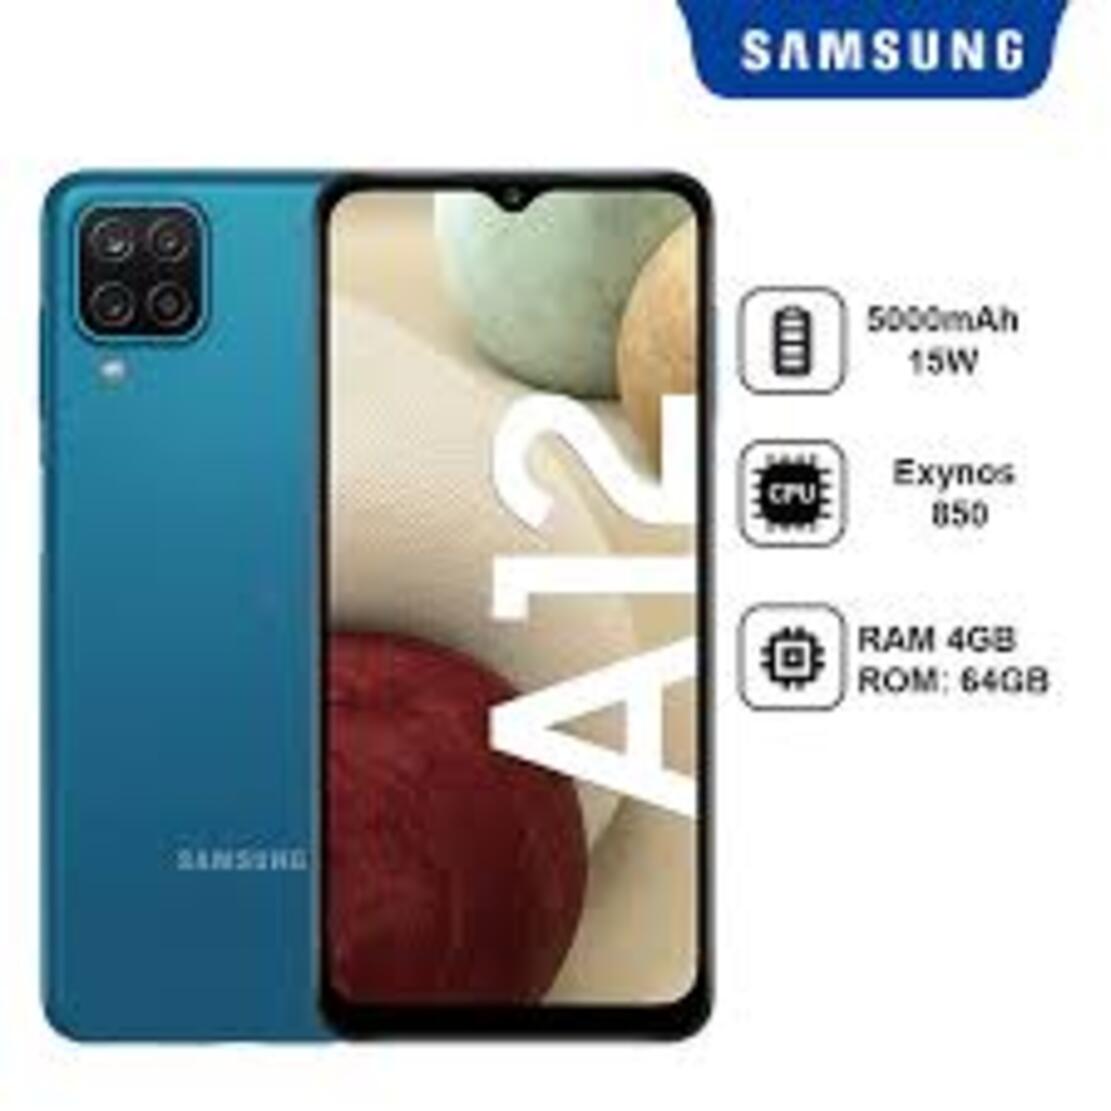 điện thoại Samsung Galaxy A12 máy 2sim ram 4G/128G Chính Hãng Màn hình: PLS TFT LCD6.5"HD+ - Bảo hành 12 tháng